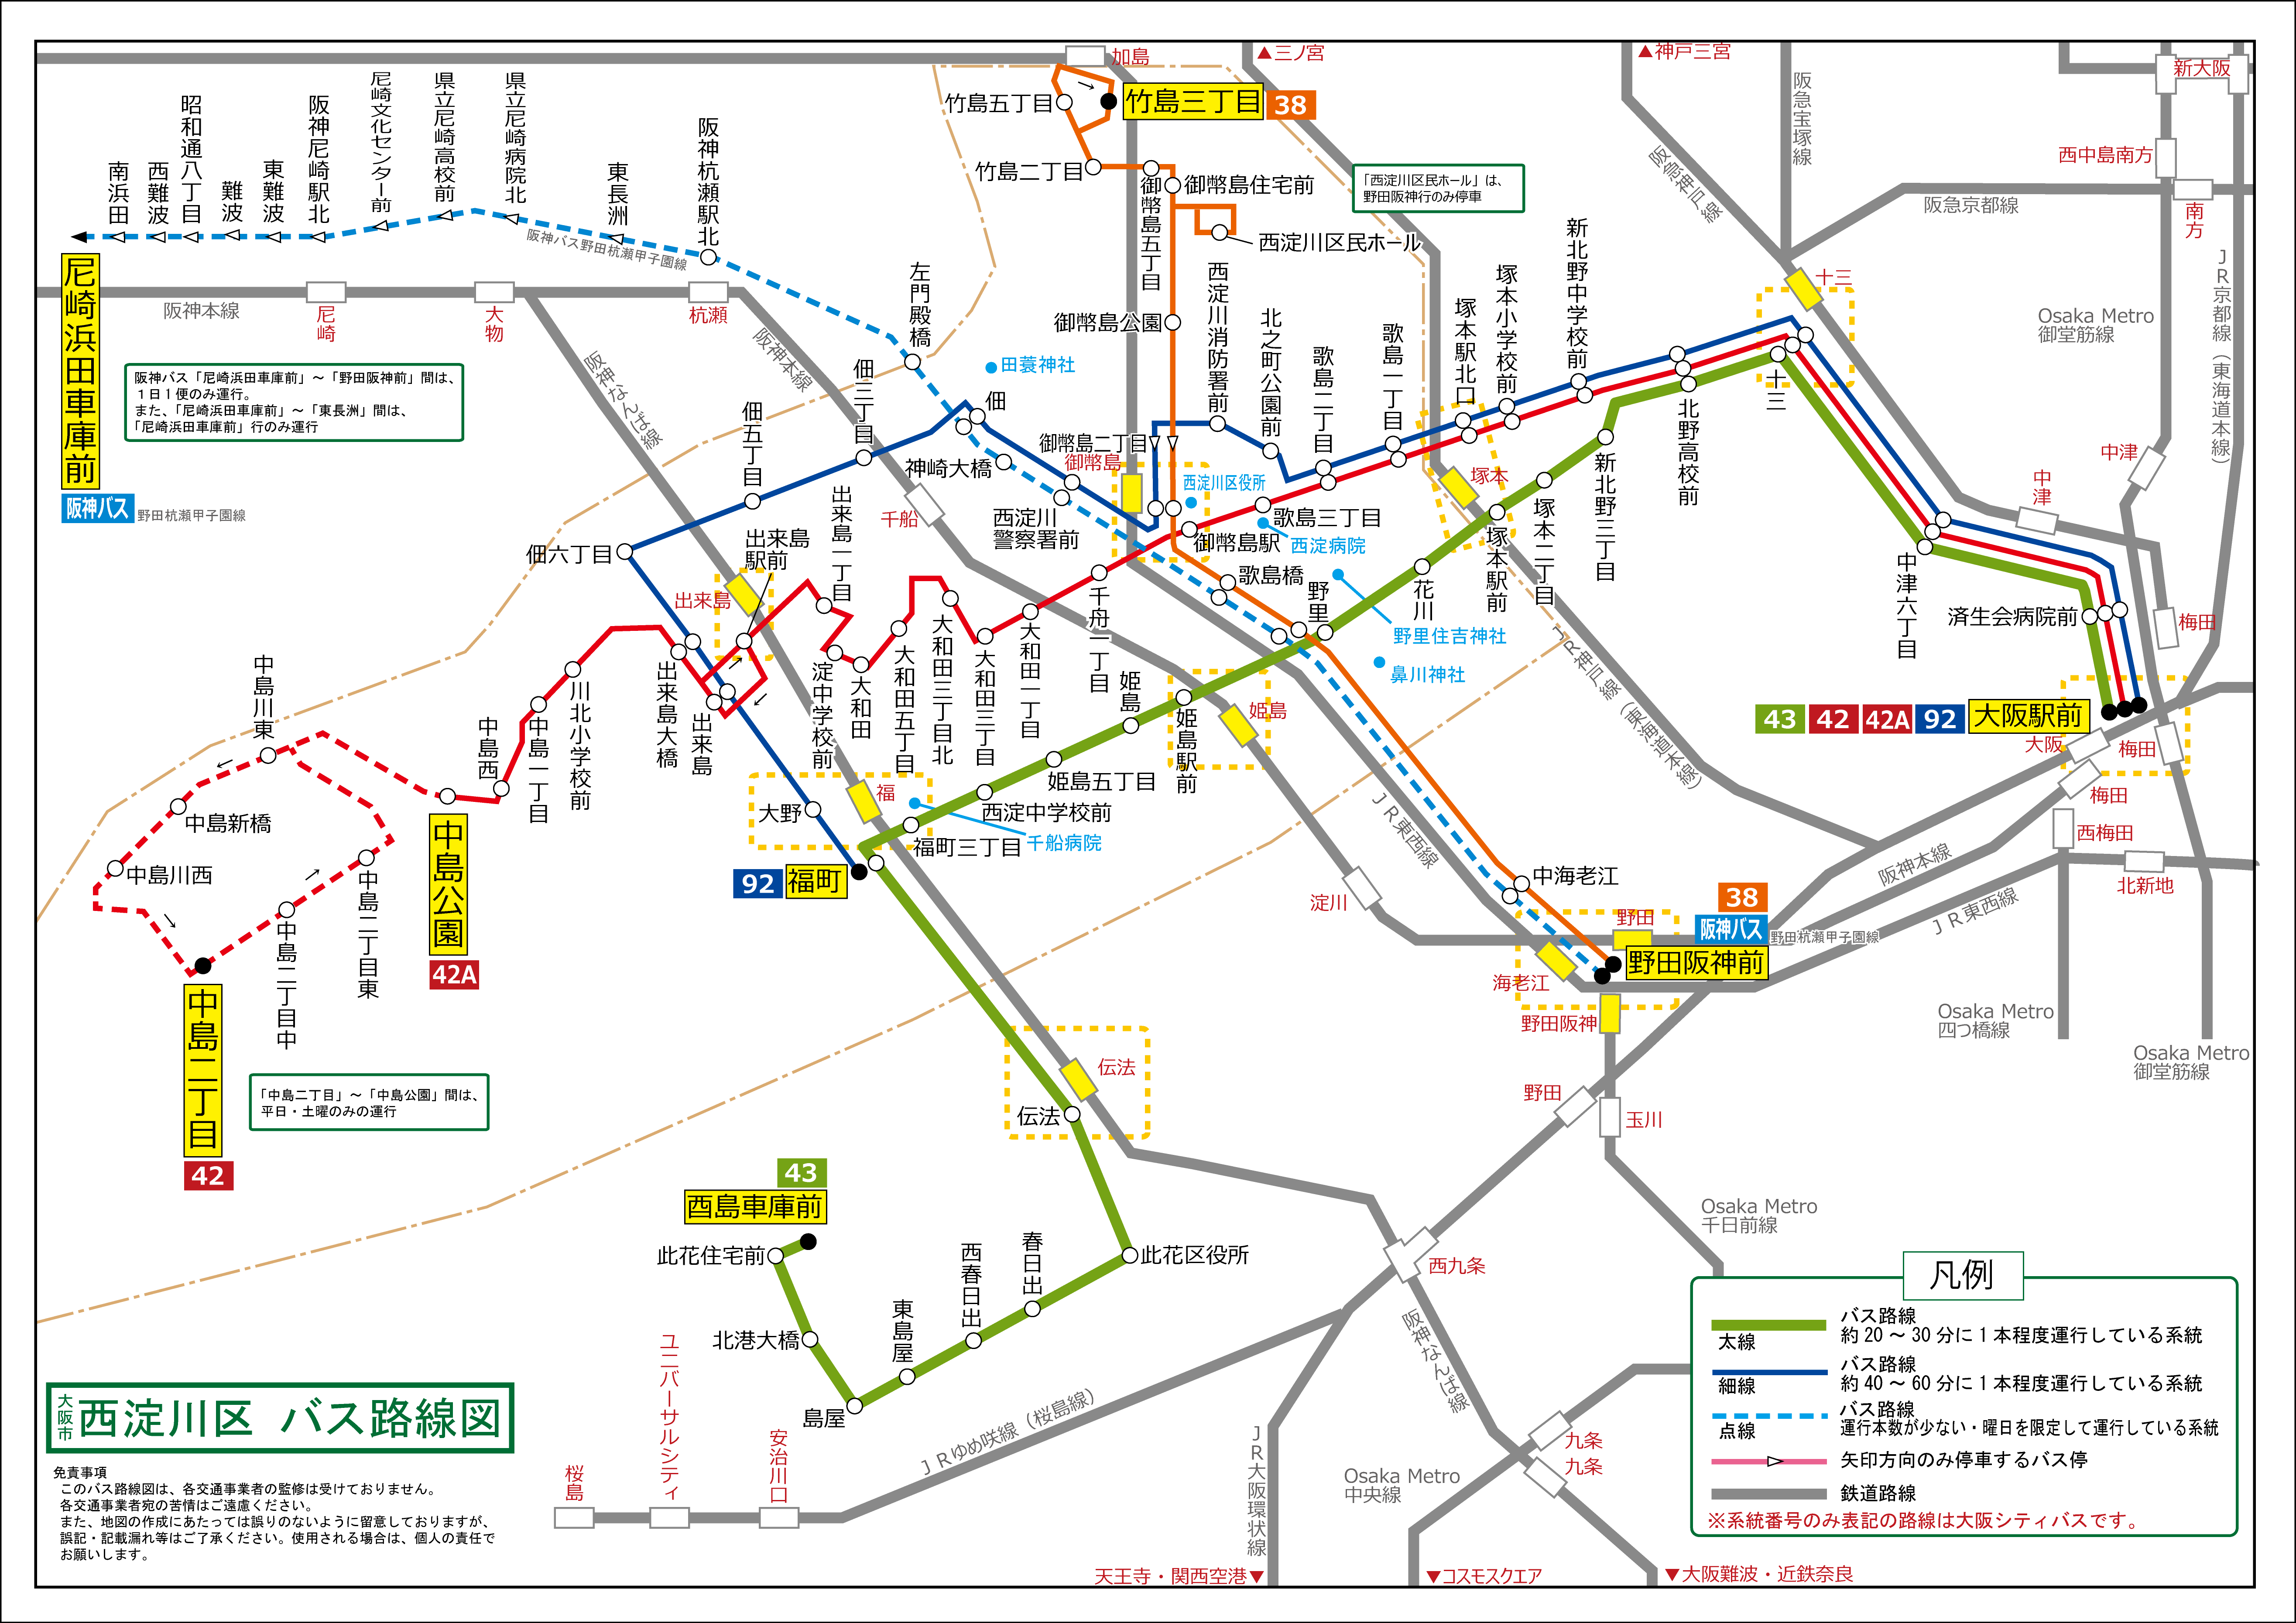 大阪 西淀川区バス路線図 旅とまちなみとパインどうでしょう